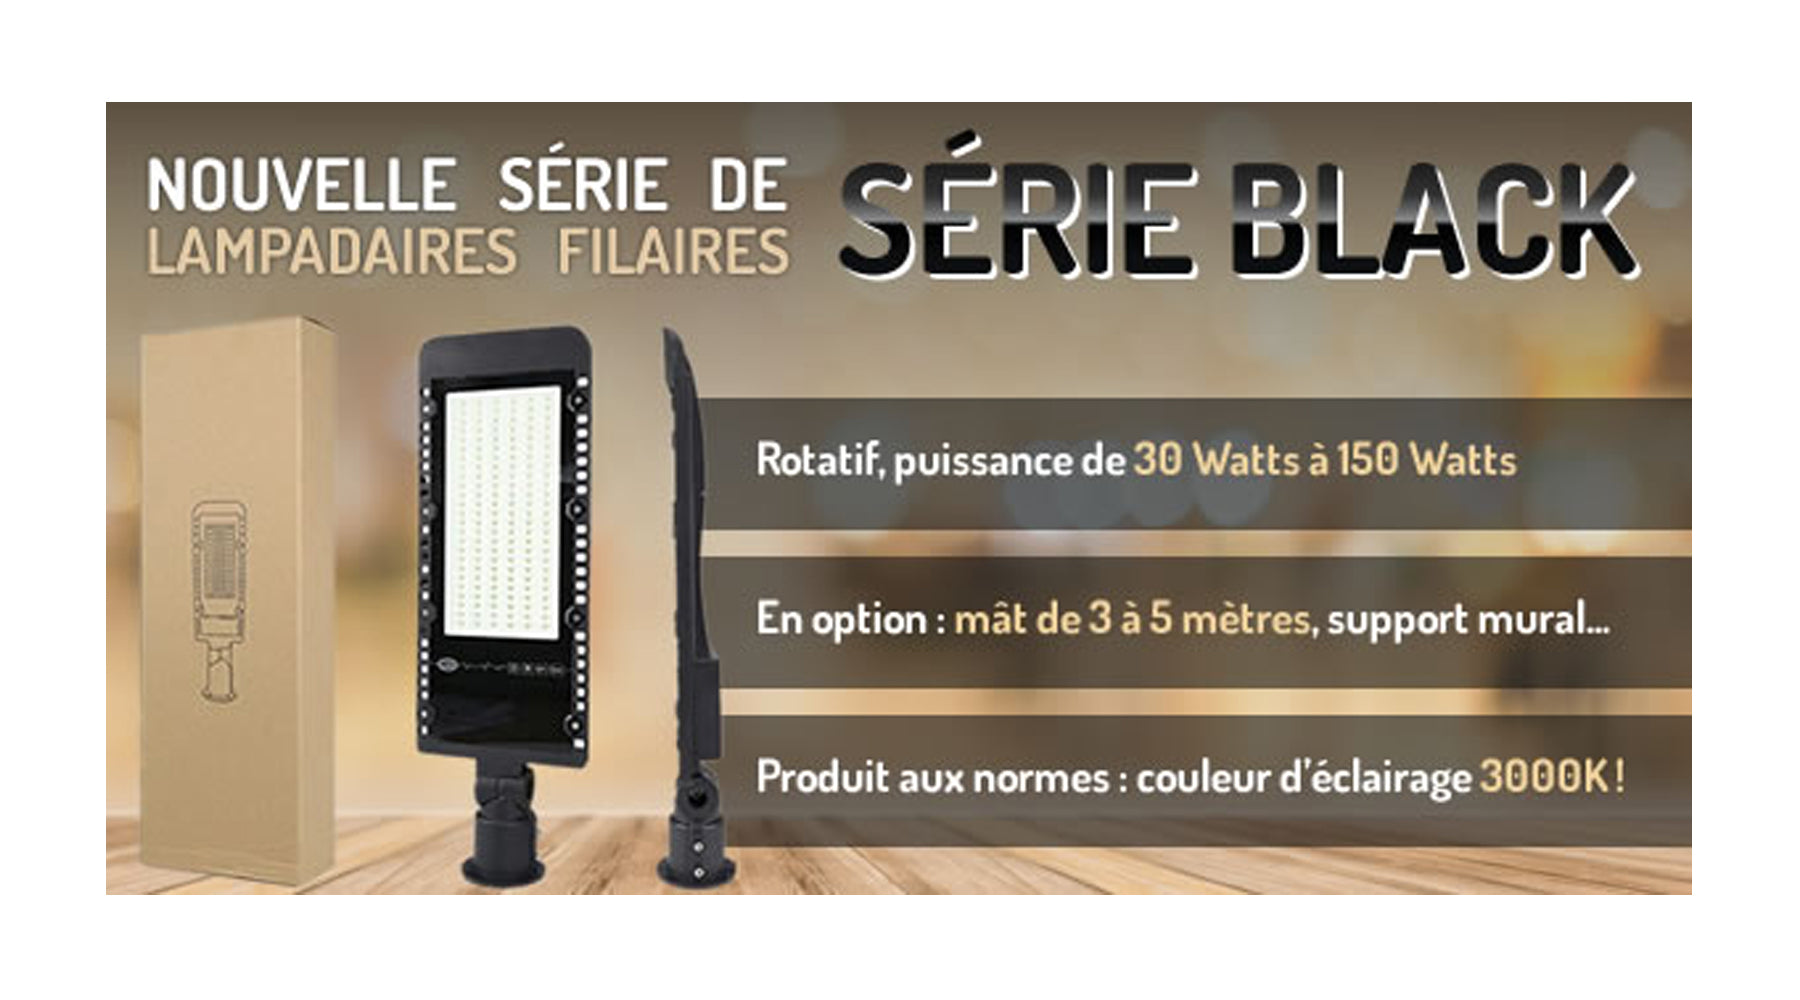 [NOUVEAU] Lampadaire LED filaire rotatif - Série BLACK